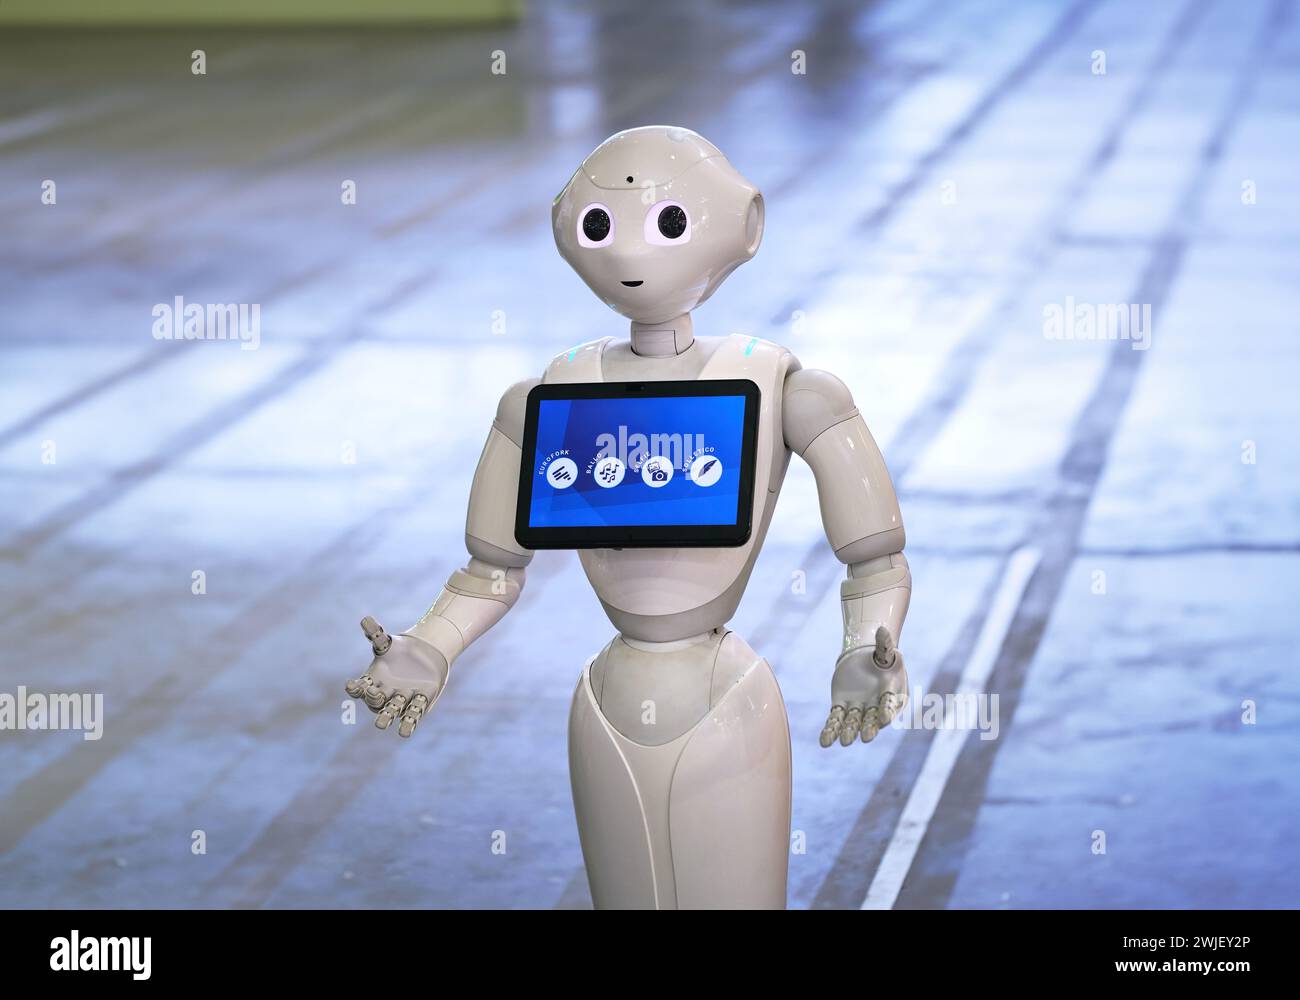 Torino, Italia - 14 febbraio 2024: Pepper, un assistente robotico con schermo informativo, accoglie i visitatori in uno stand presso l'intelligenza artificiale Foto Stock